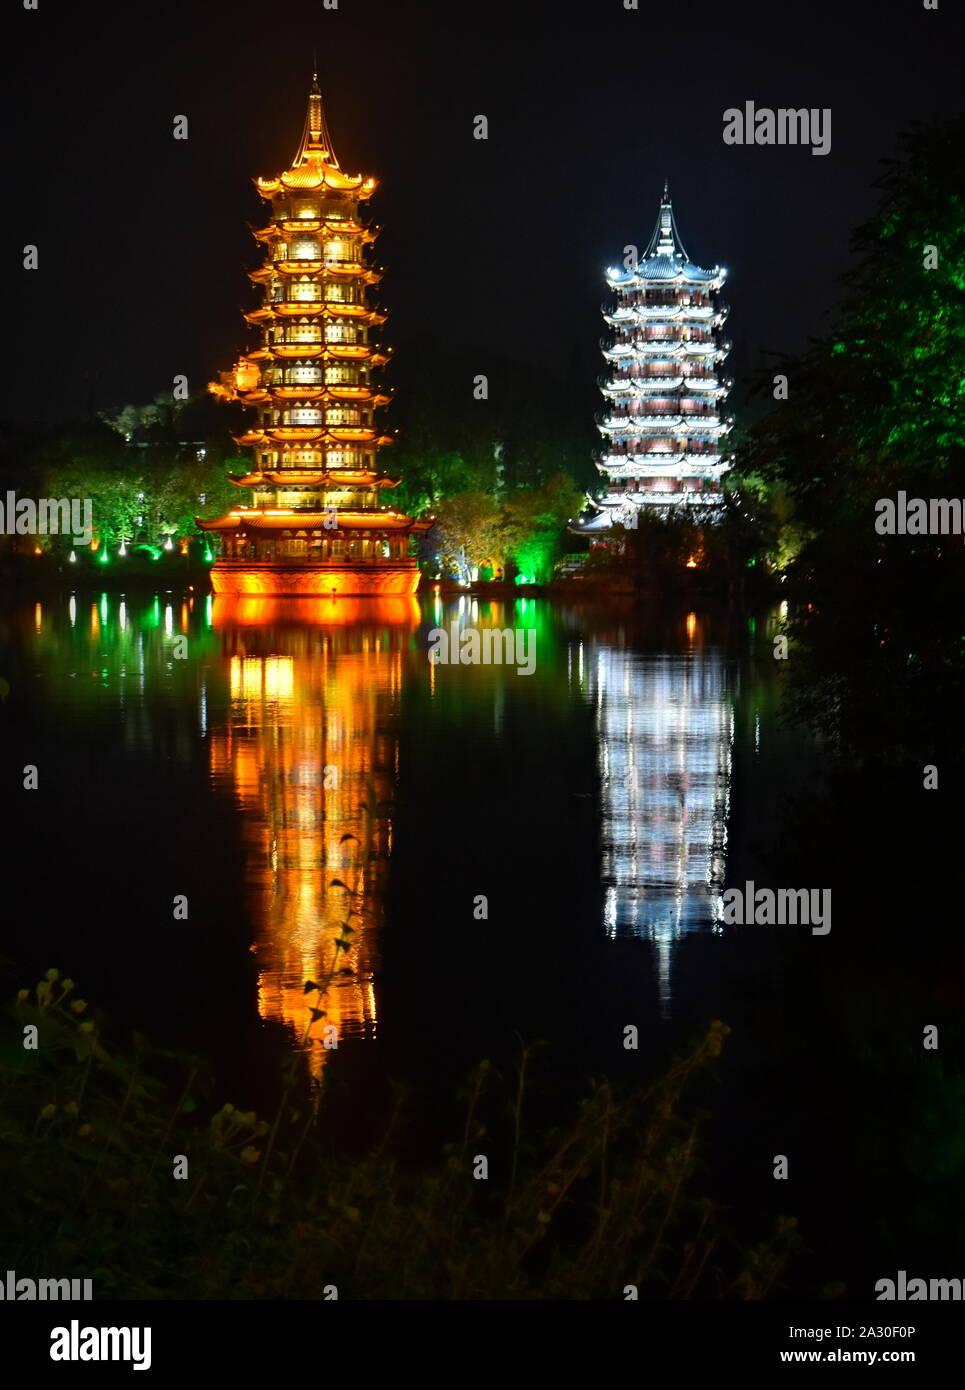 Soleil et lune flottant pagodes de l'eau reflète à Guilin, Chine nuit Banque D'Images